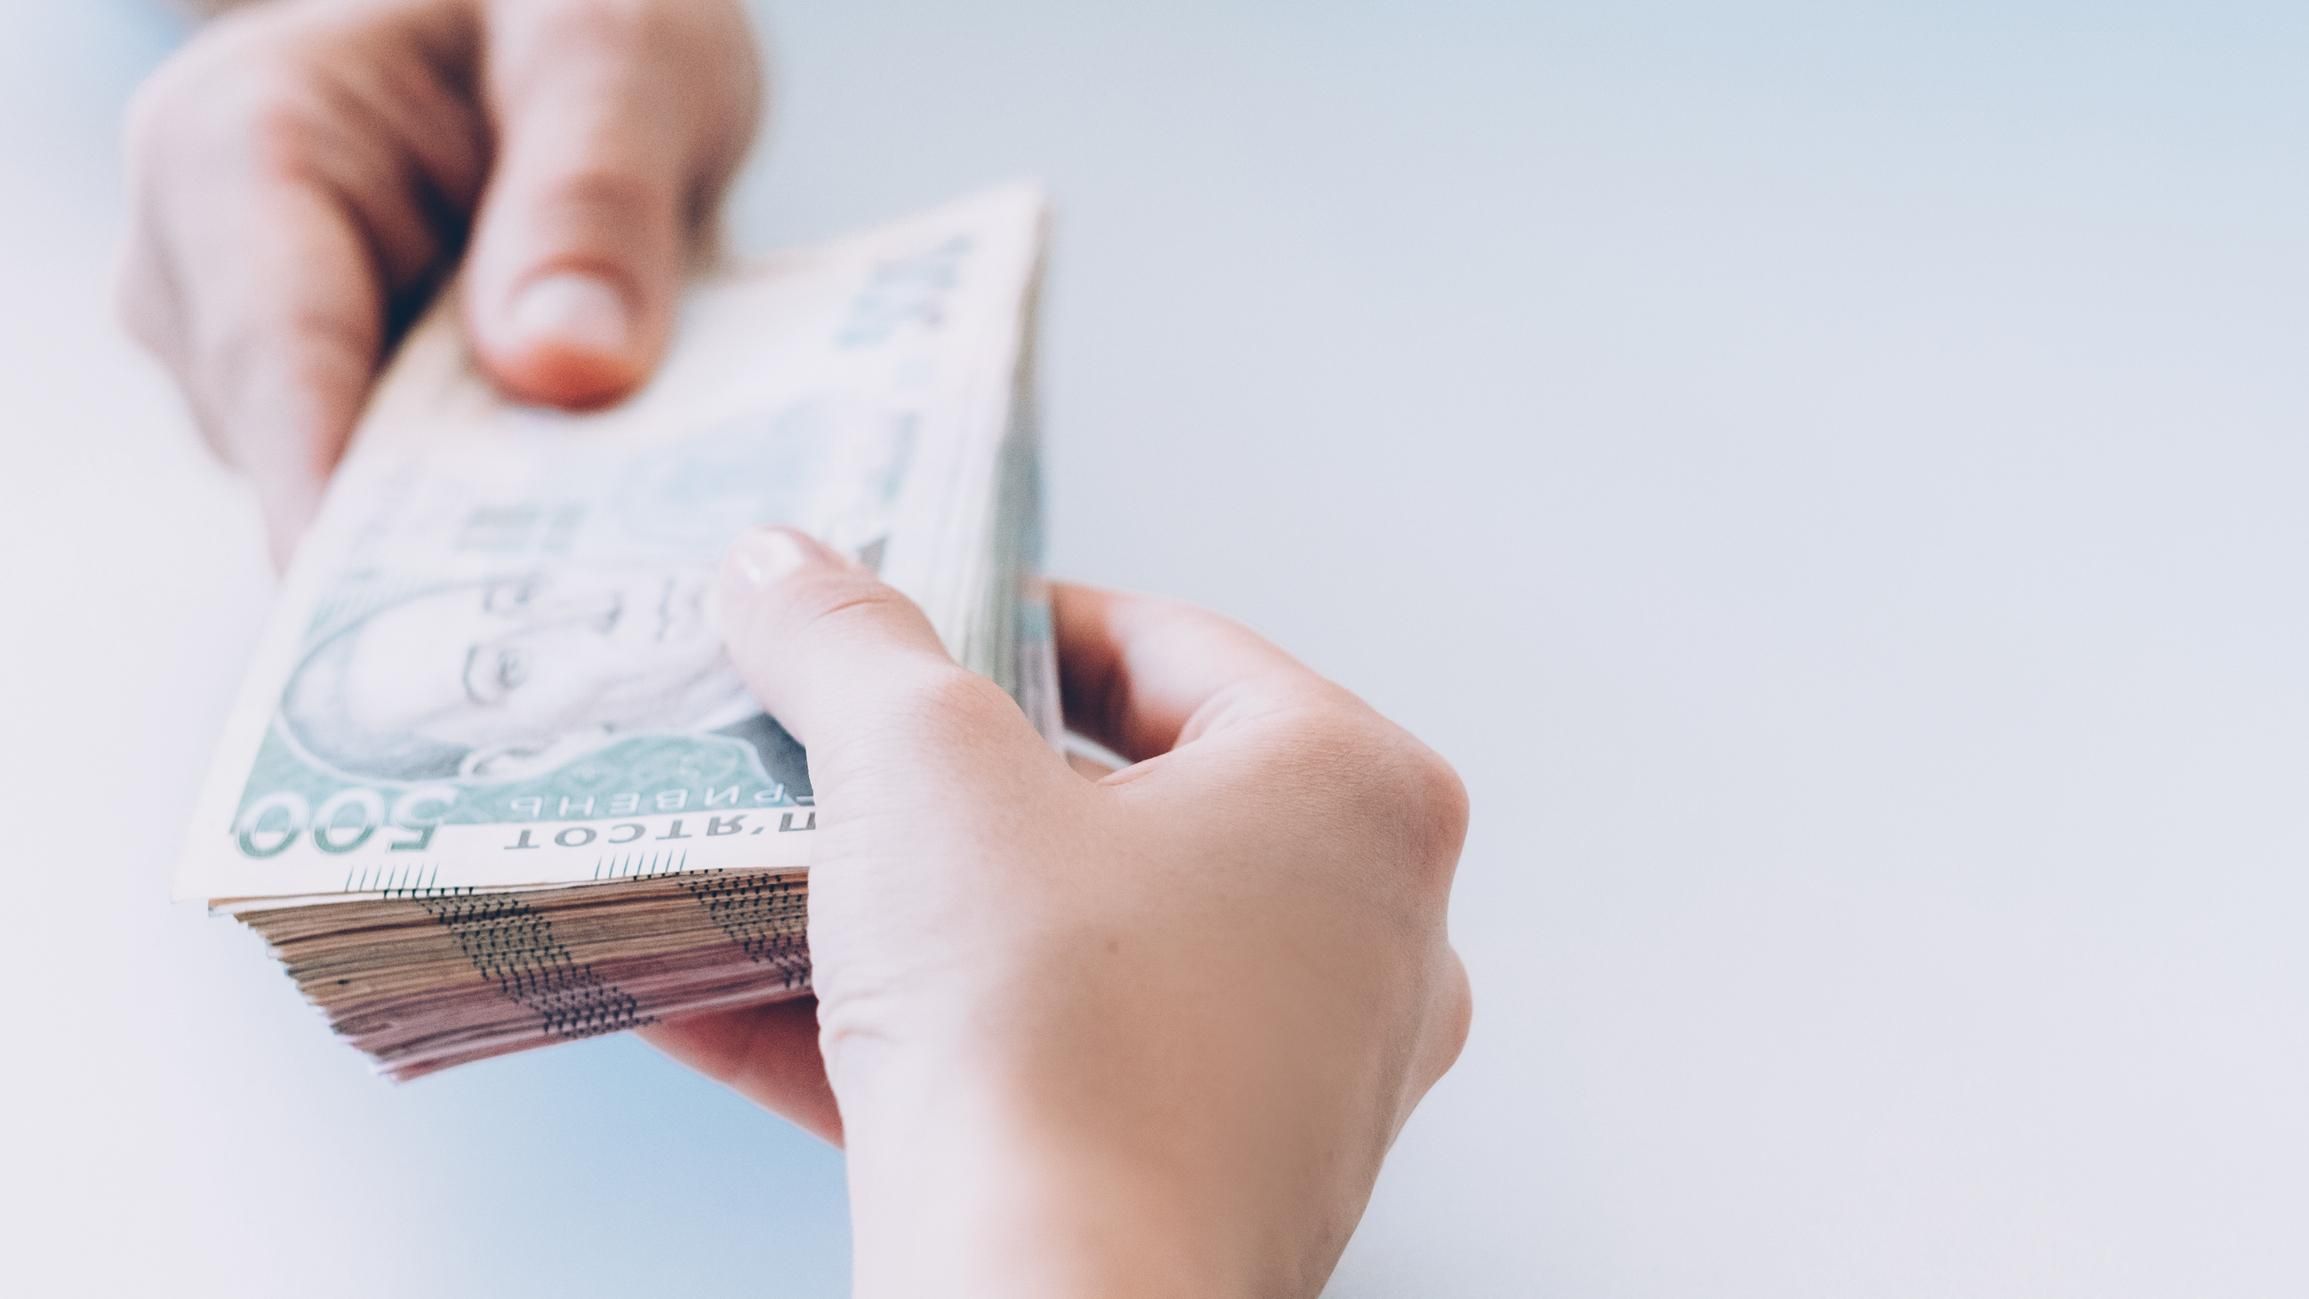 Скільки Україна повинна виплатити за держборгом до кінця року: дані Мінфіну - Економічні новини України - Економіка